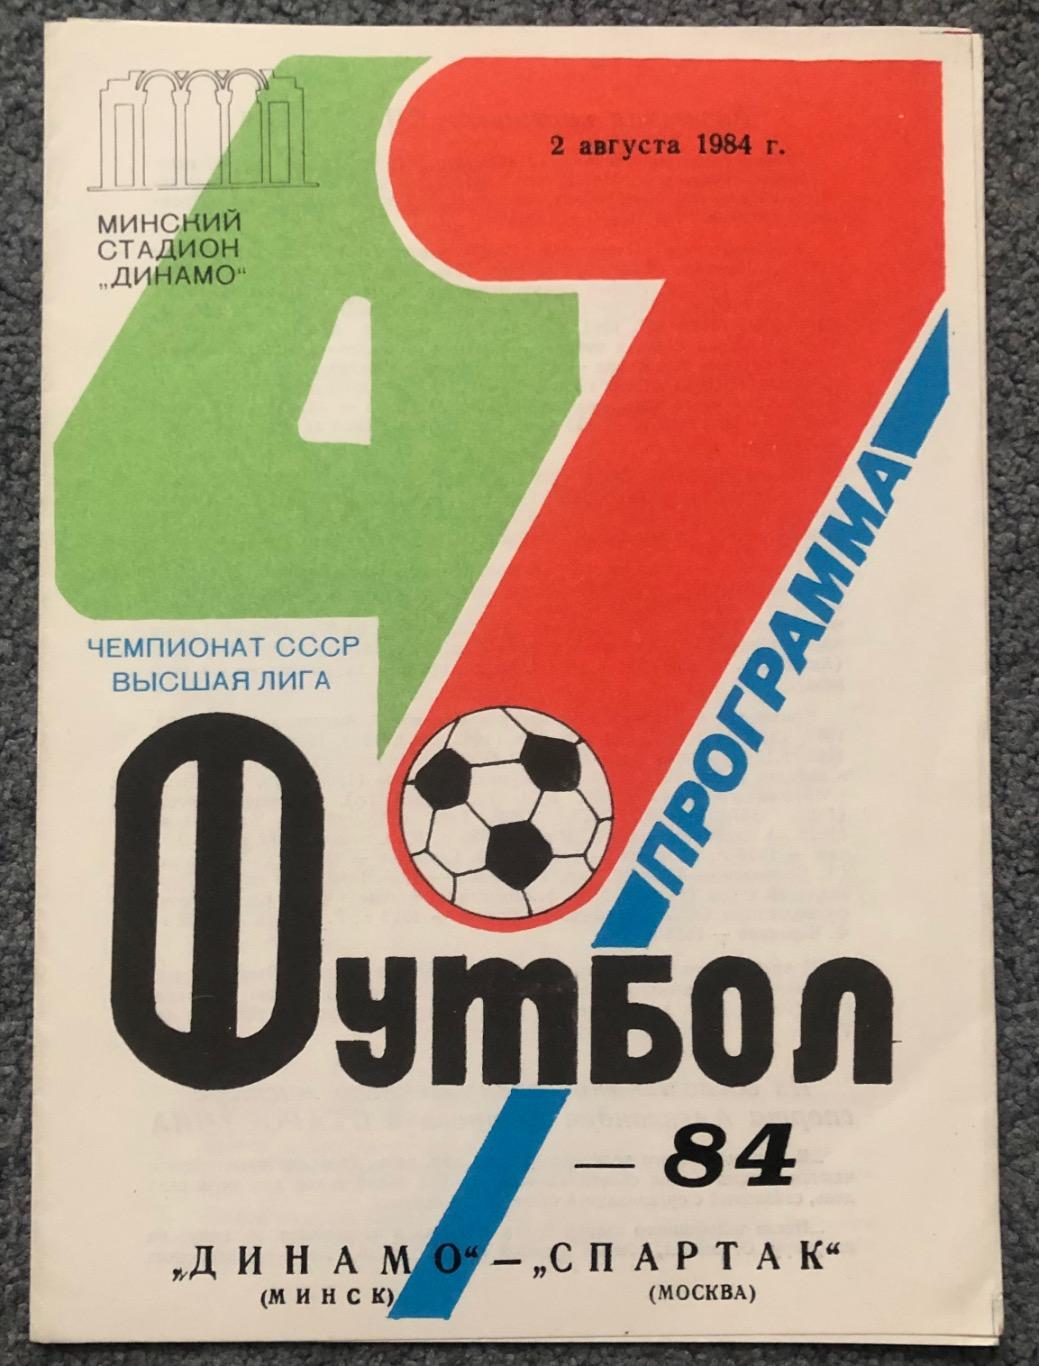 Динамо Минск - Спартак Москва, 02.08.1984